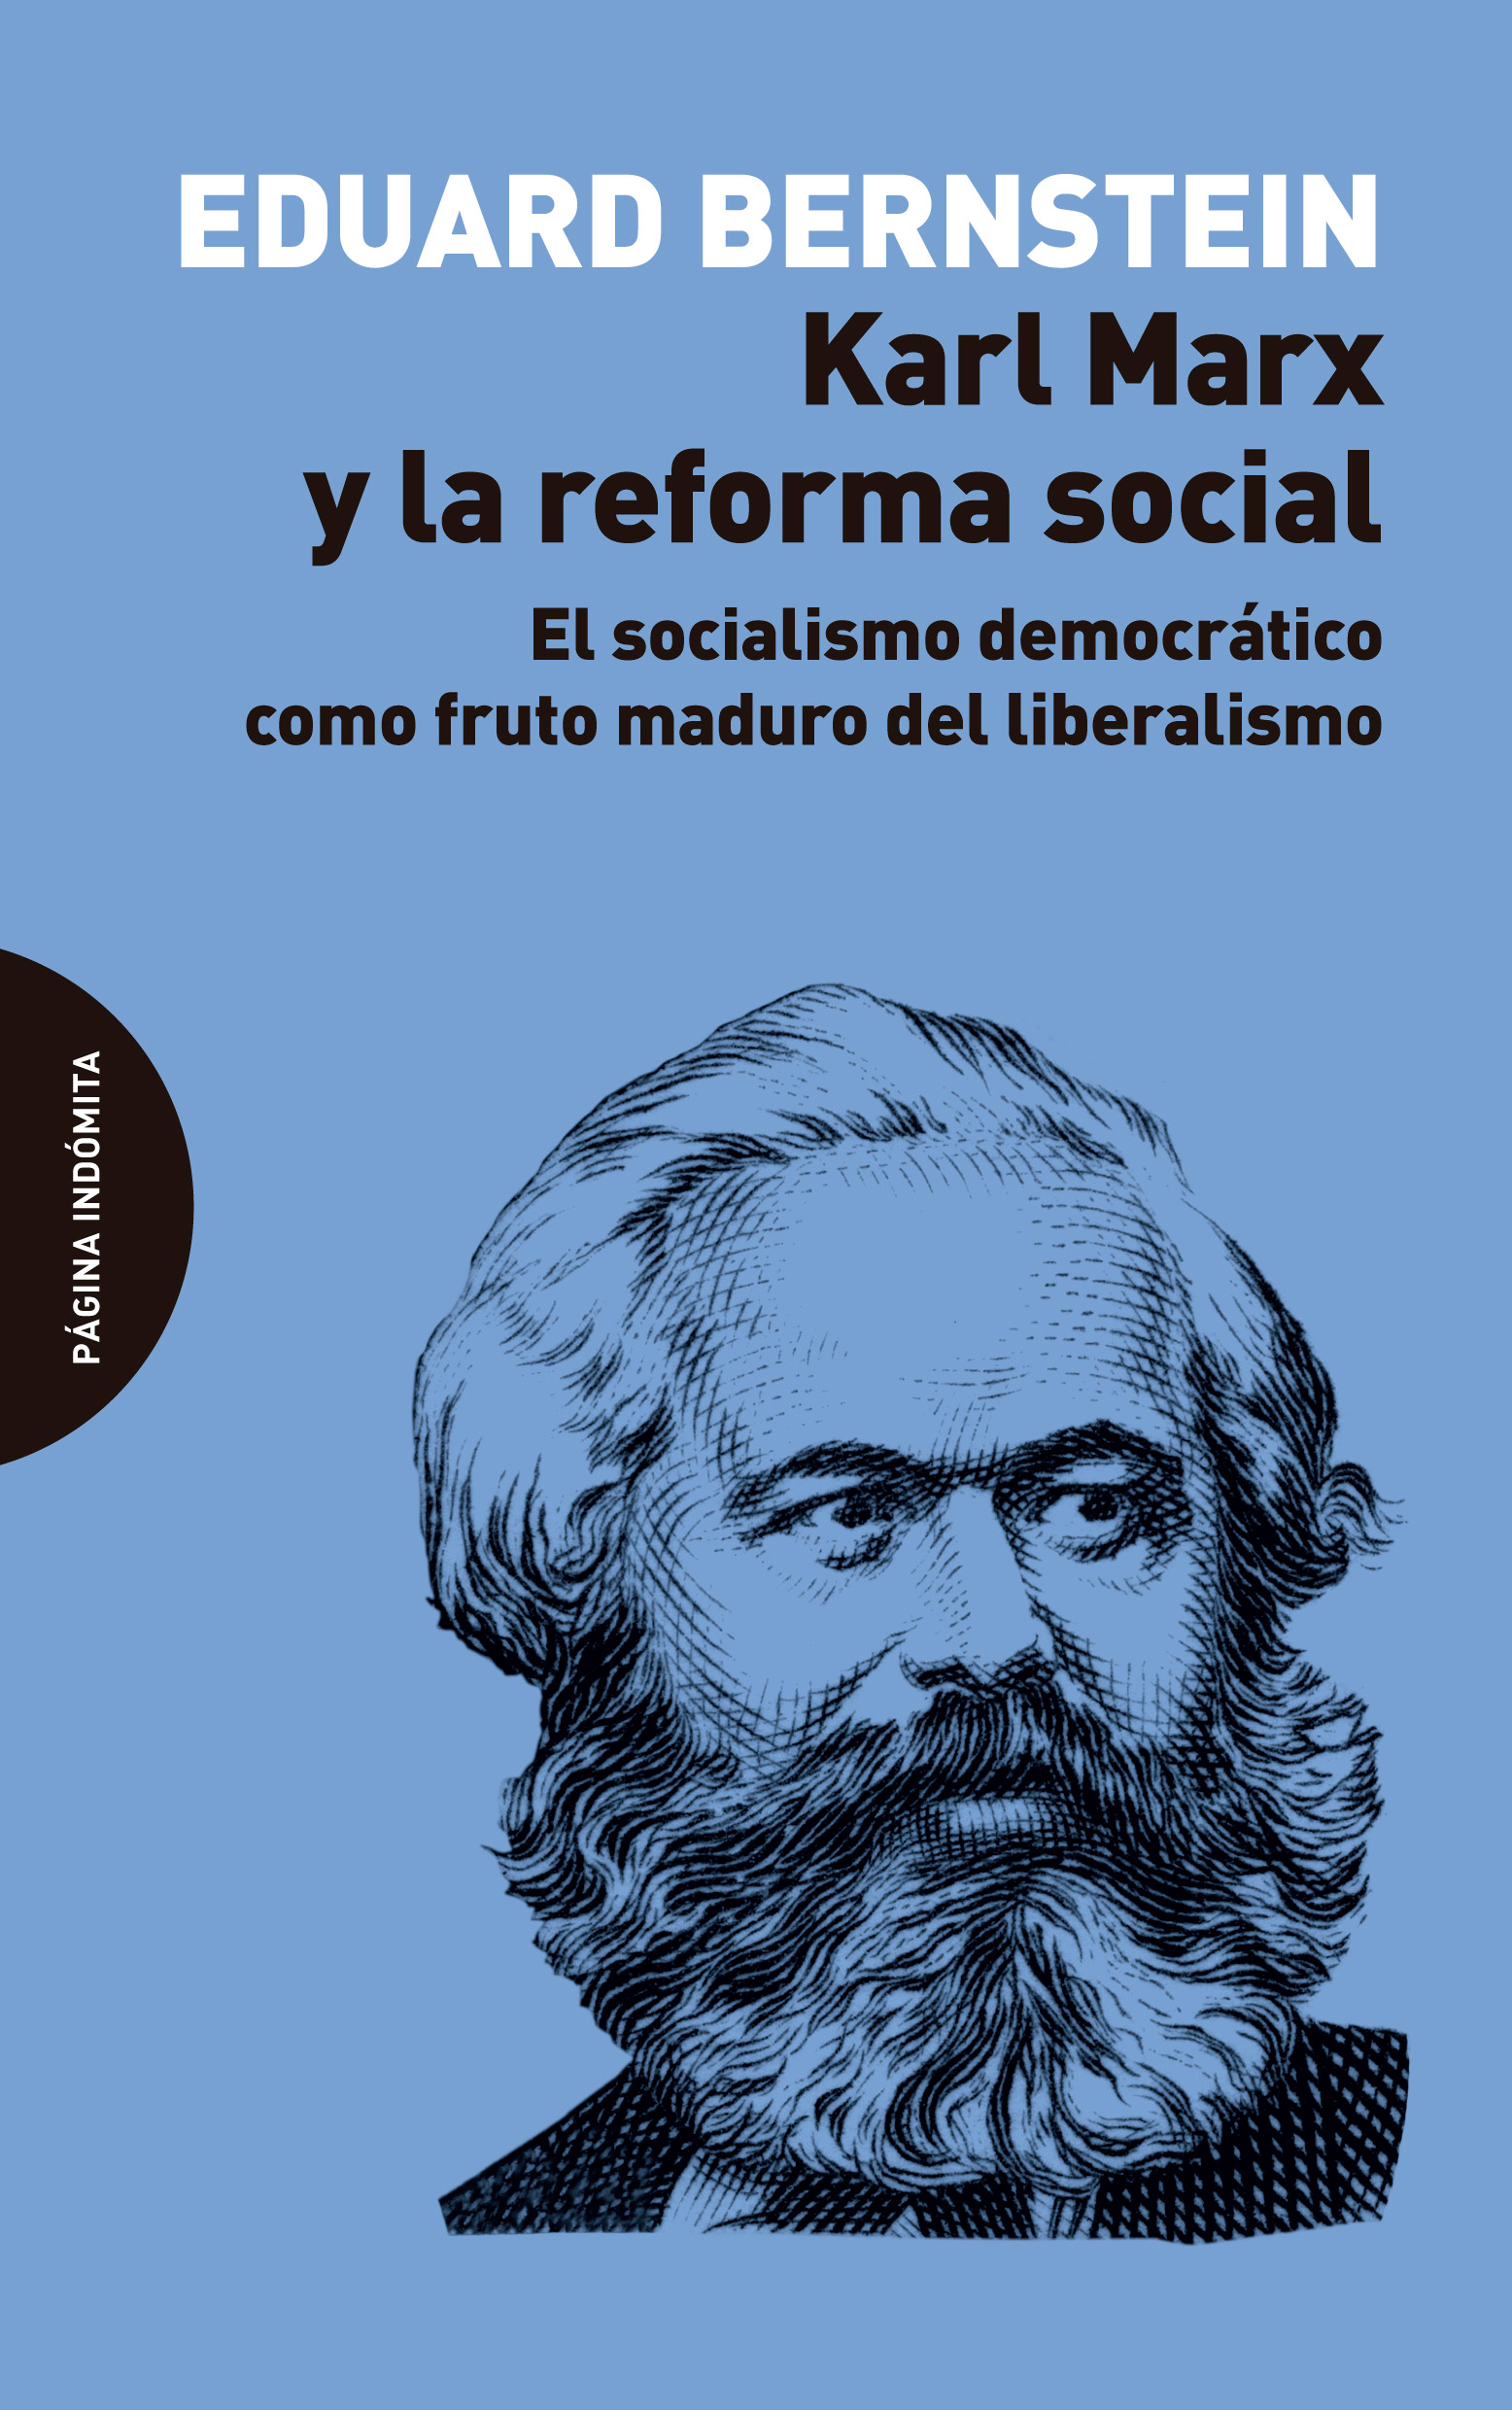 Karl Marx y la reforma social – Eduard Bernstein – Página Indómita